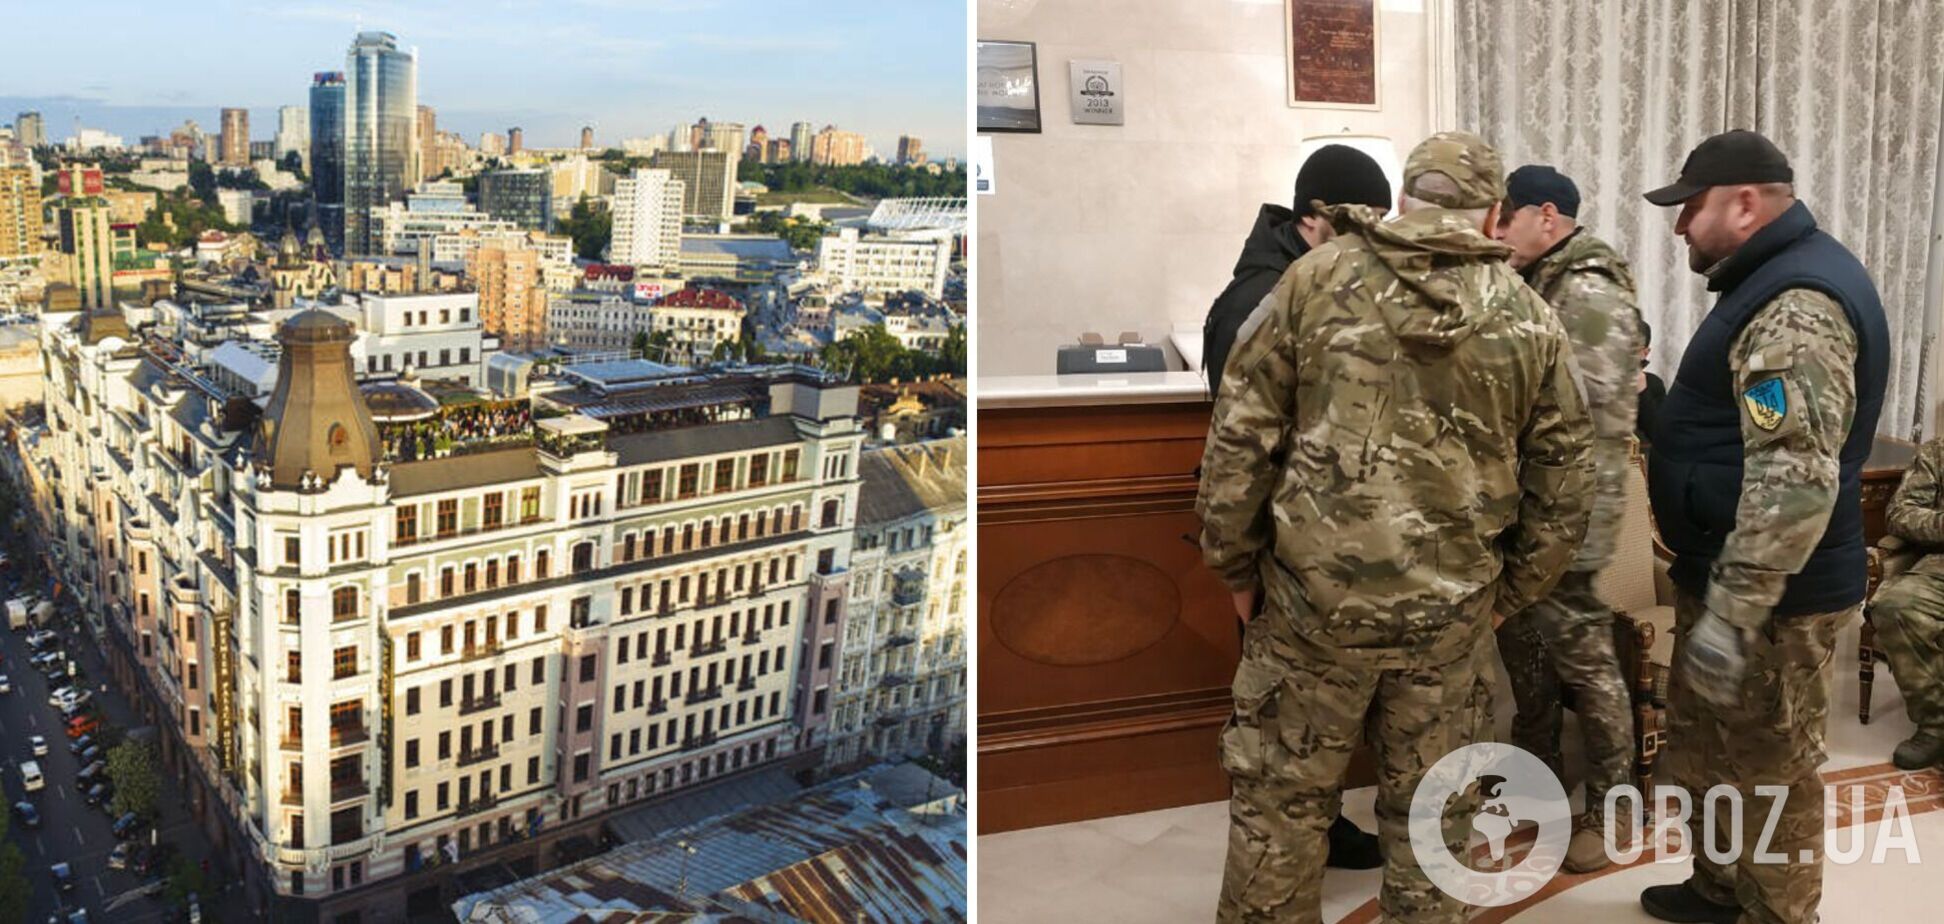 У готелі Premier Palace у Києві влаштували акцію з вимогою щодо націоналізації: власниками назвали росіян. Фото та відео